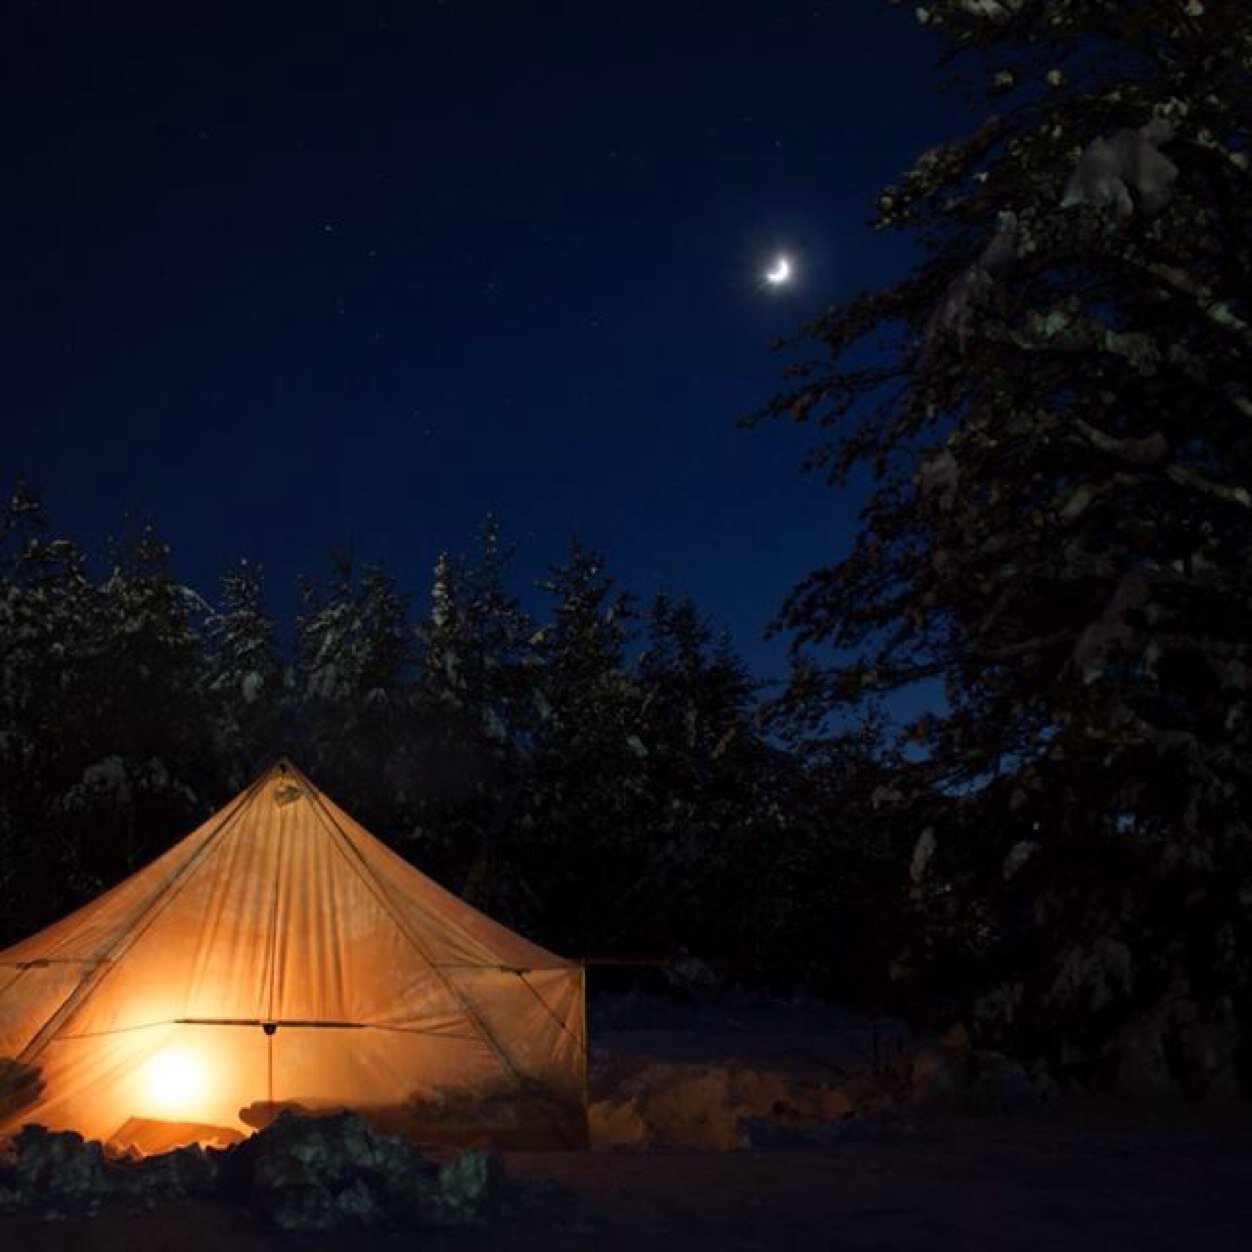 Snowtrekker Tents